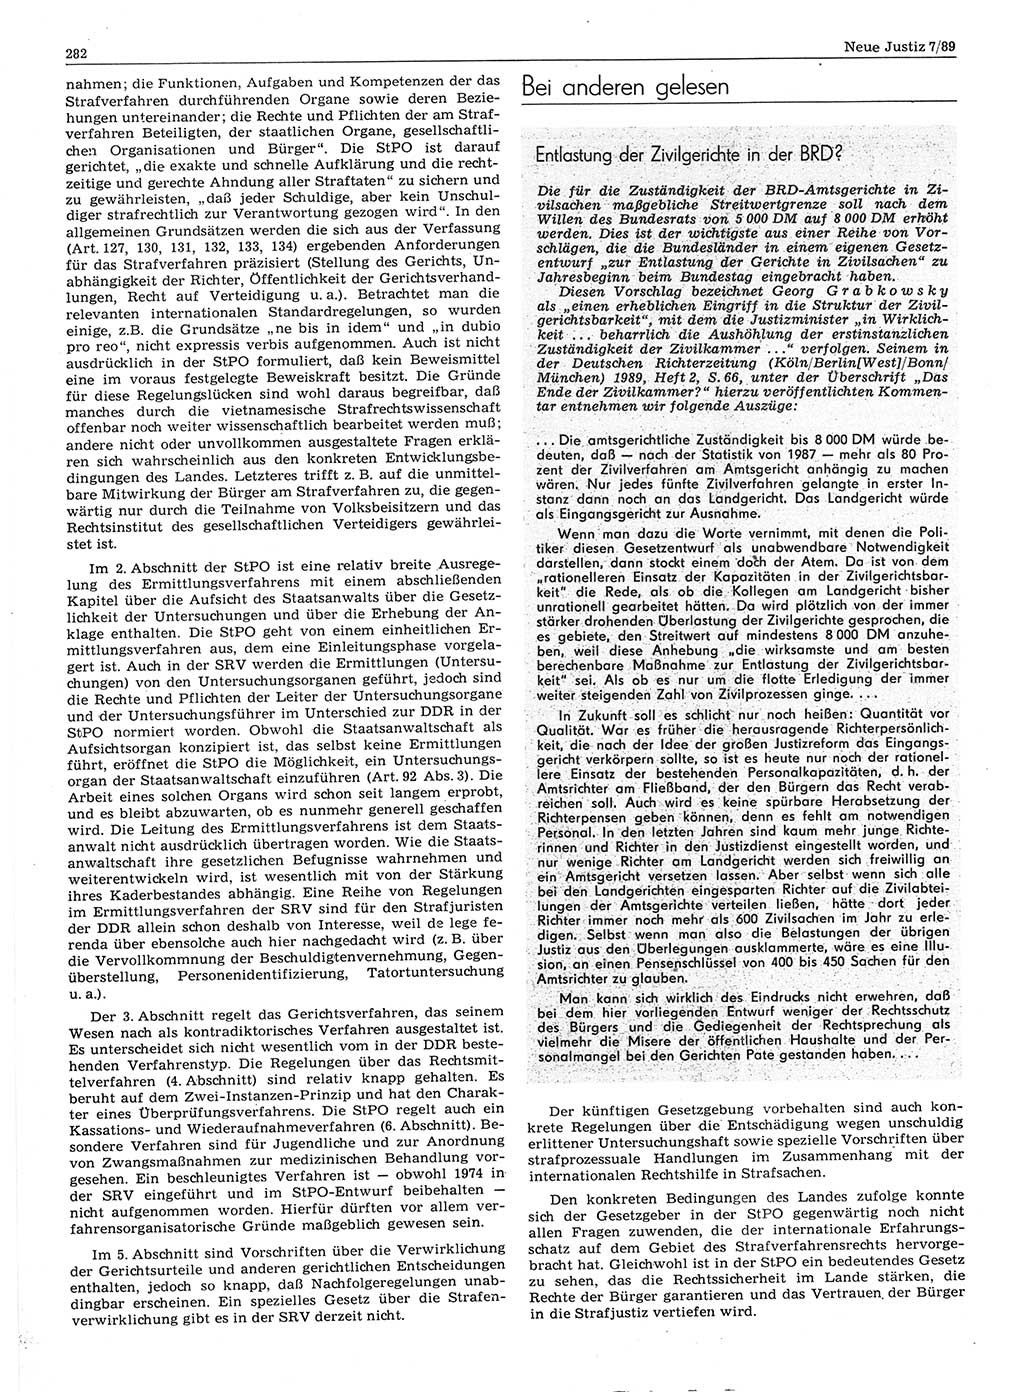 Neue Justiz (NJ), Zeitschrift für sozialistisches Recht und Gesetzlichkeit [Deutsche Demokratische Republik (DDR)], 43. Jahrgang 1989, Seite 282 (NJ DDR 1989, S. 282)